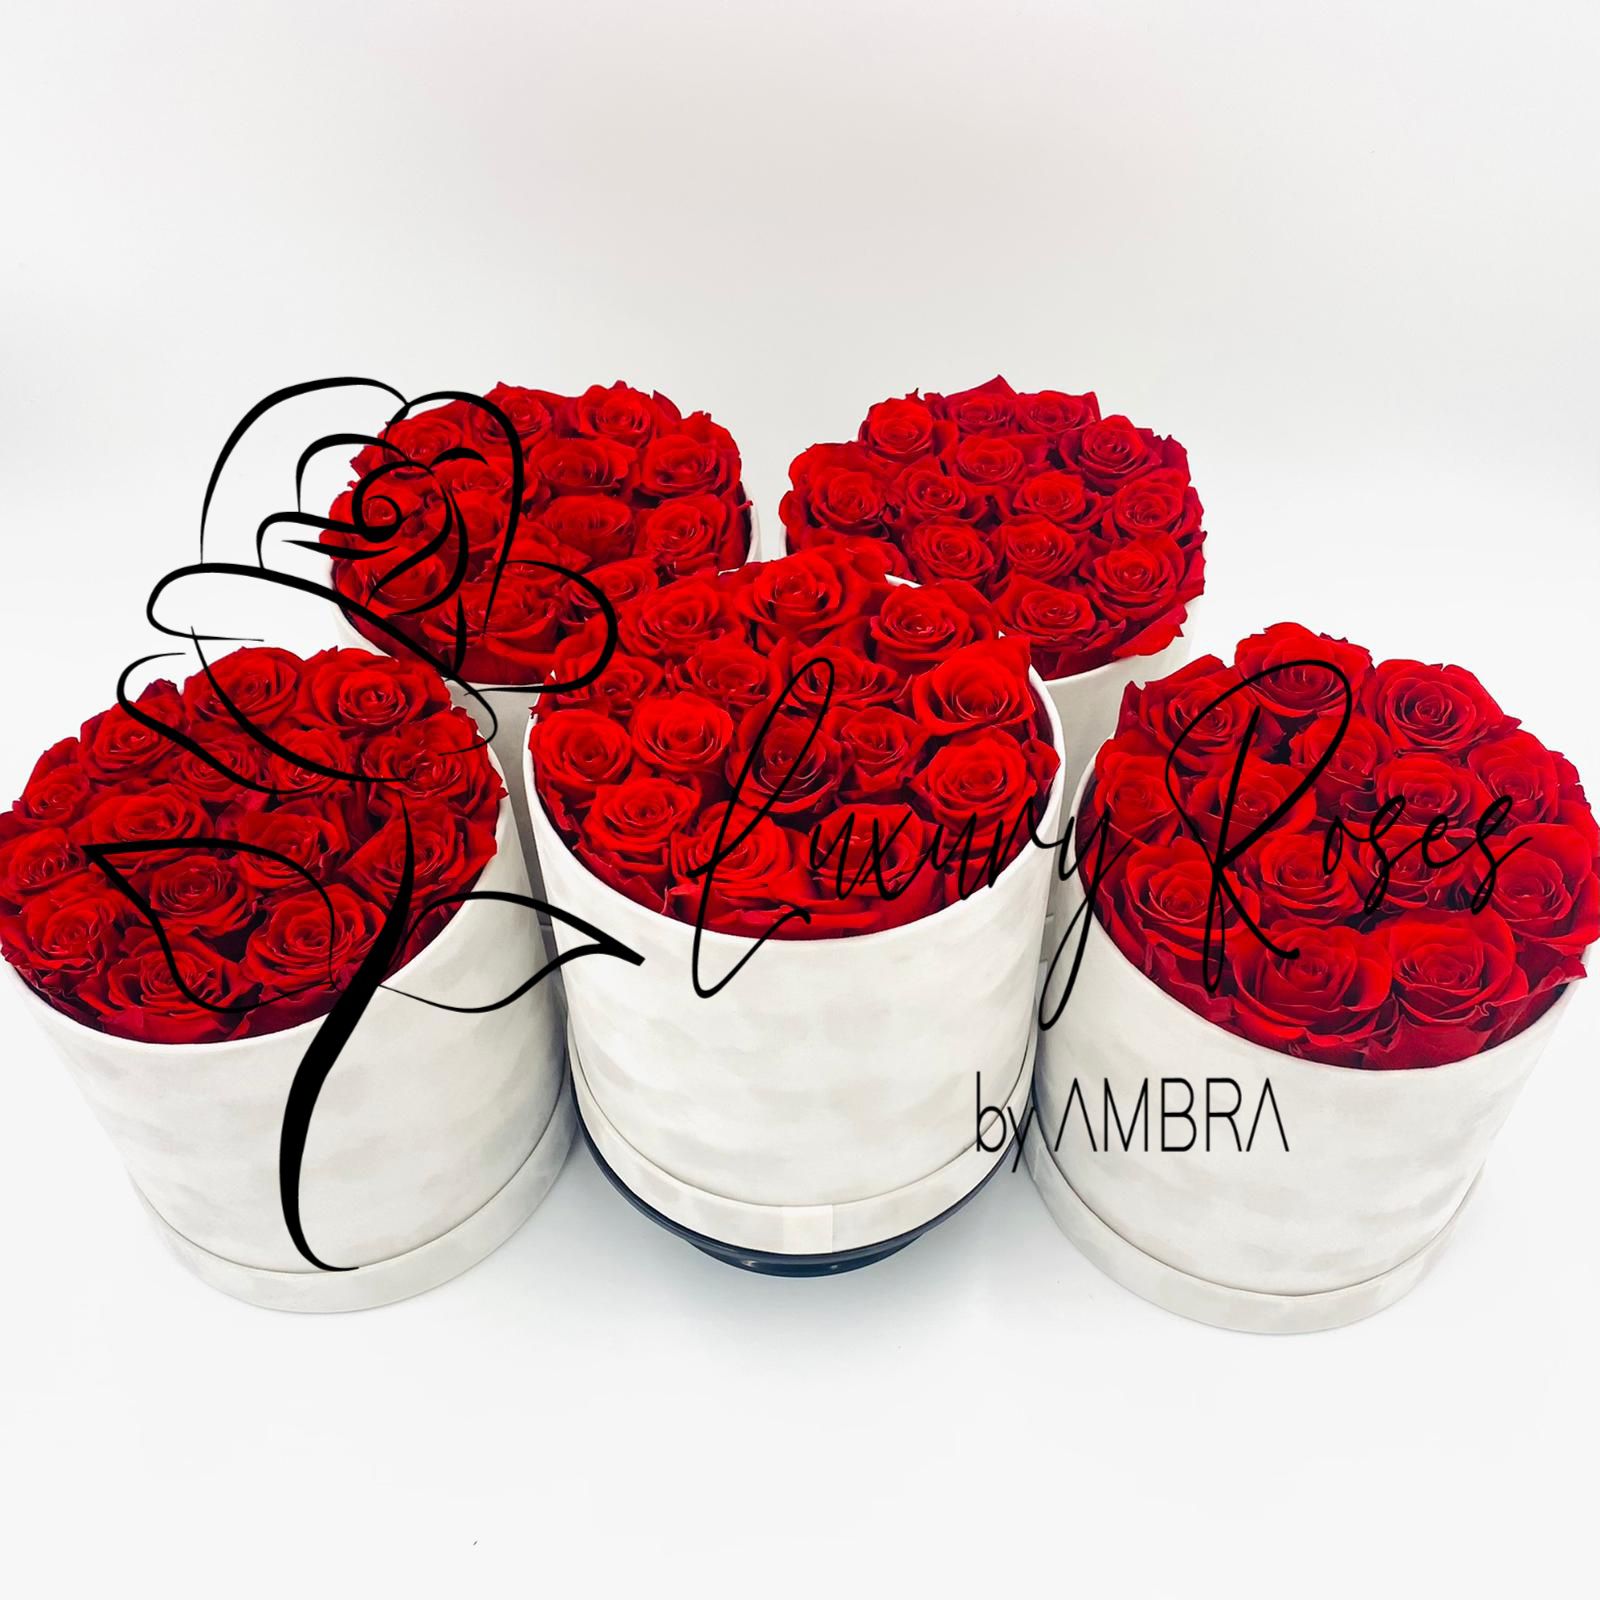 Red roses white velvet Box Eternal Box Roses bucket Gift Real Preserved Flowers Anniversary Birthday Present Luxury immortal rose